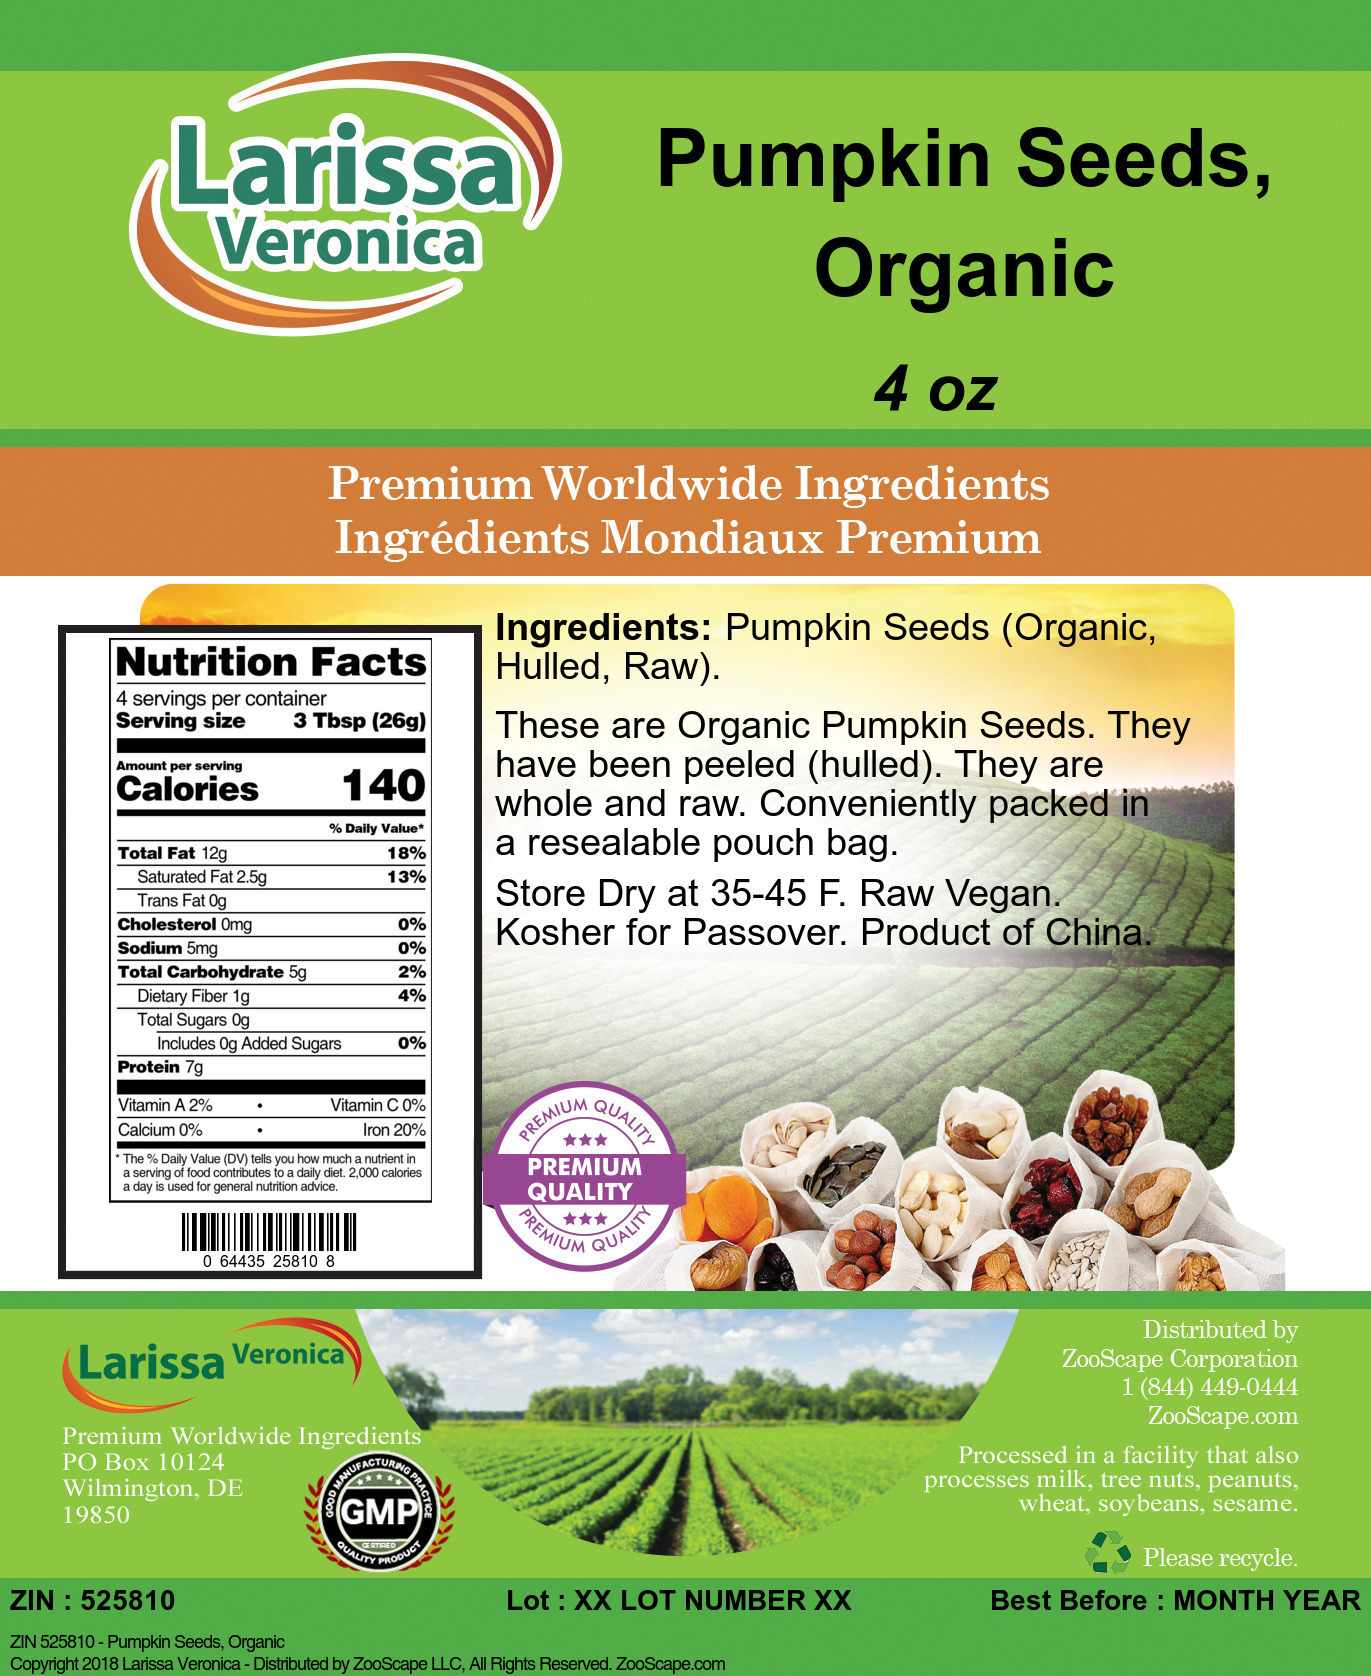 Pumpkin Seeds, Organic - Label